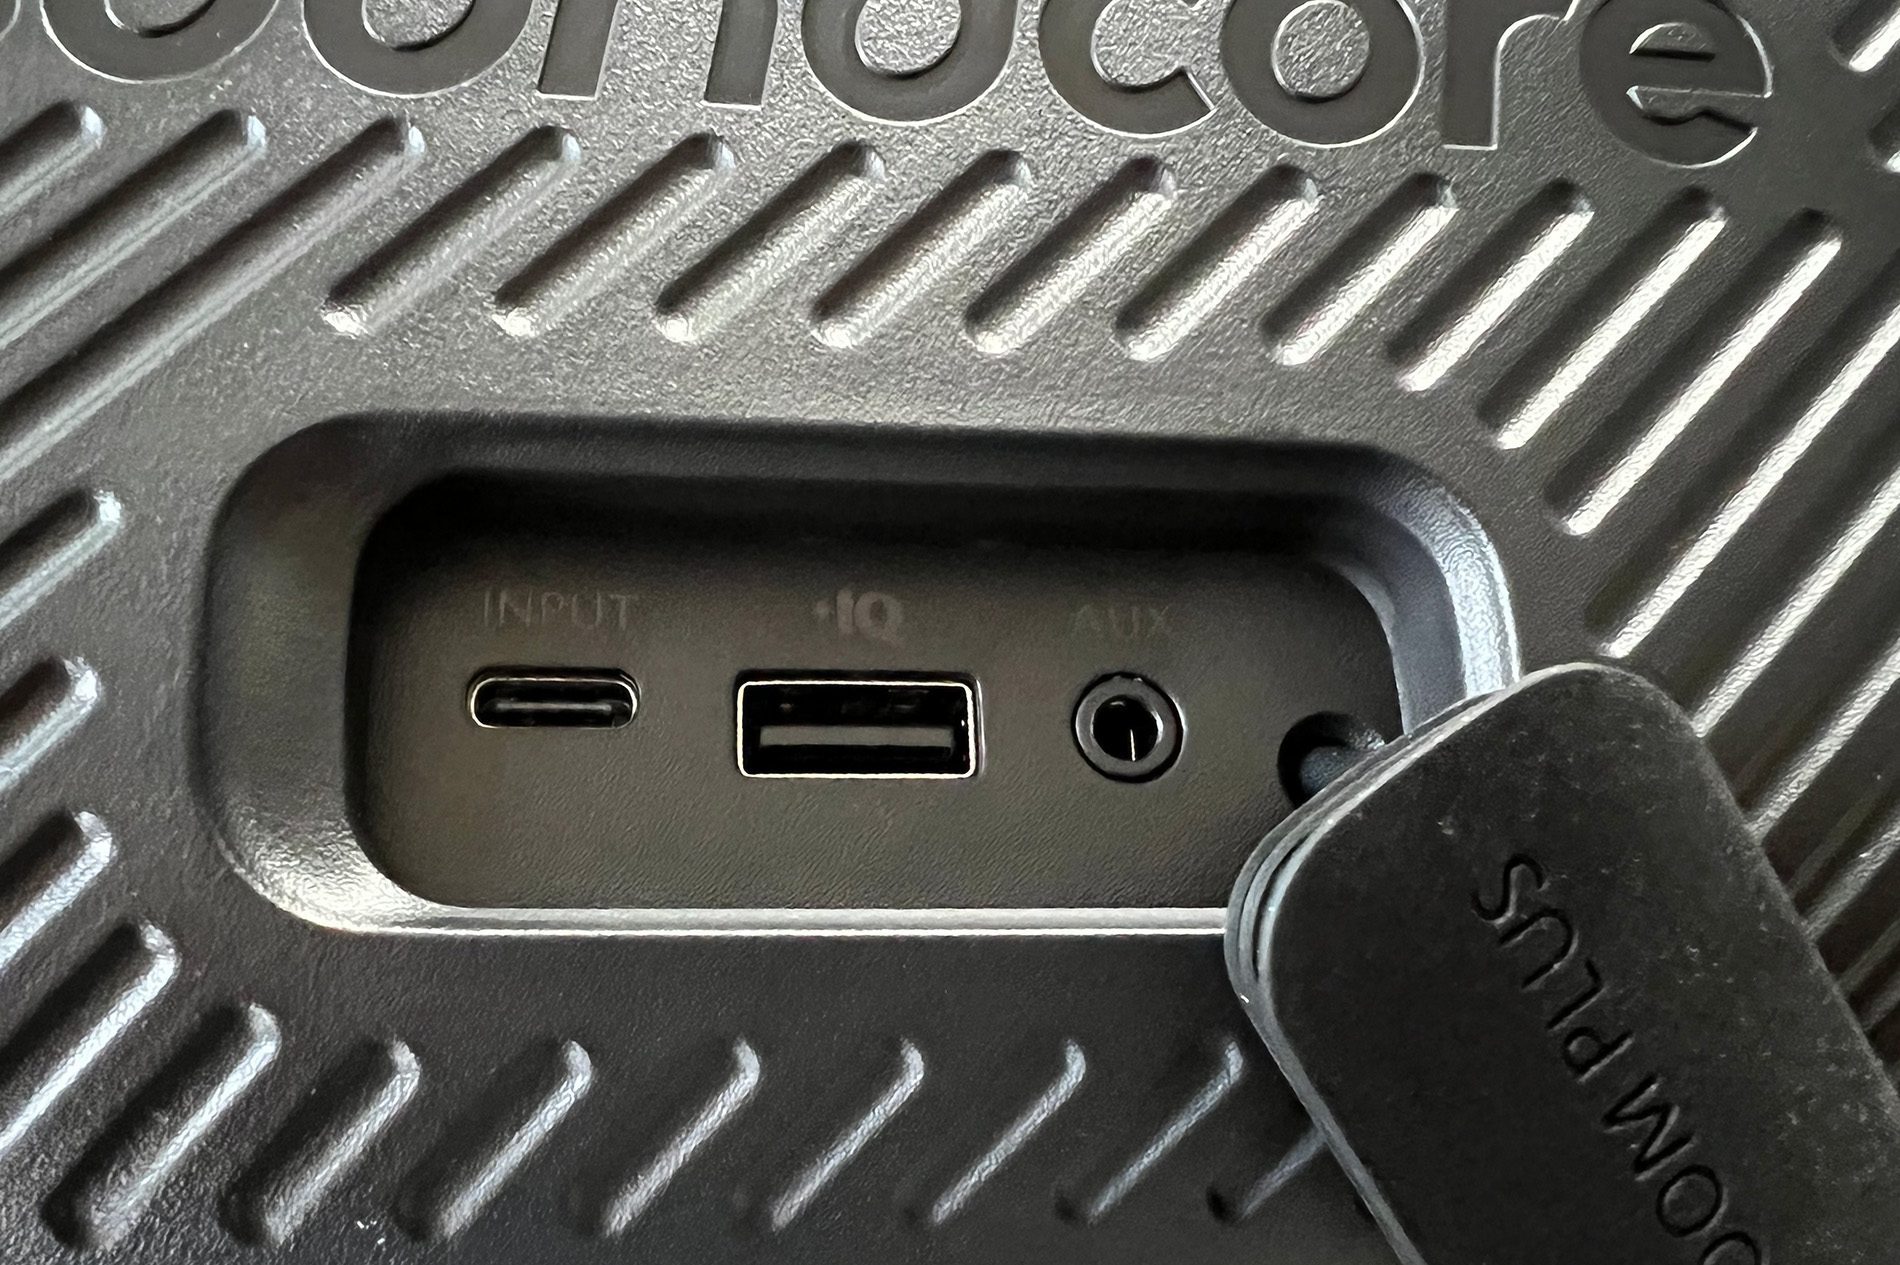 Tutaj możesz zobaczyć połączenia Soundcore Motion Boom Plus: USB-C do ładowania, USB-A do użytku jako power bank i złącze jack.